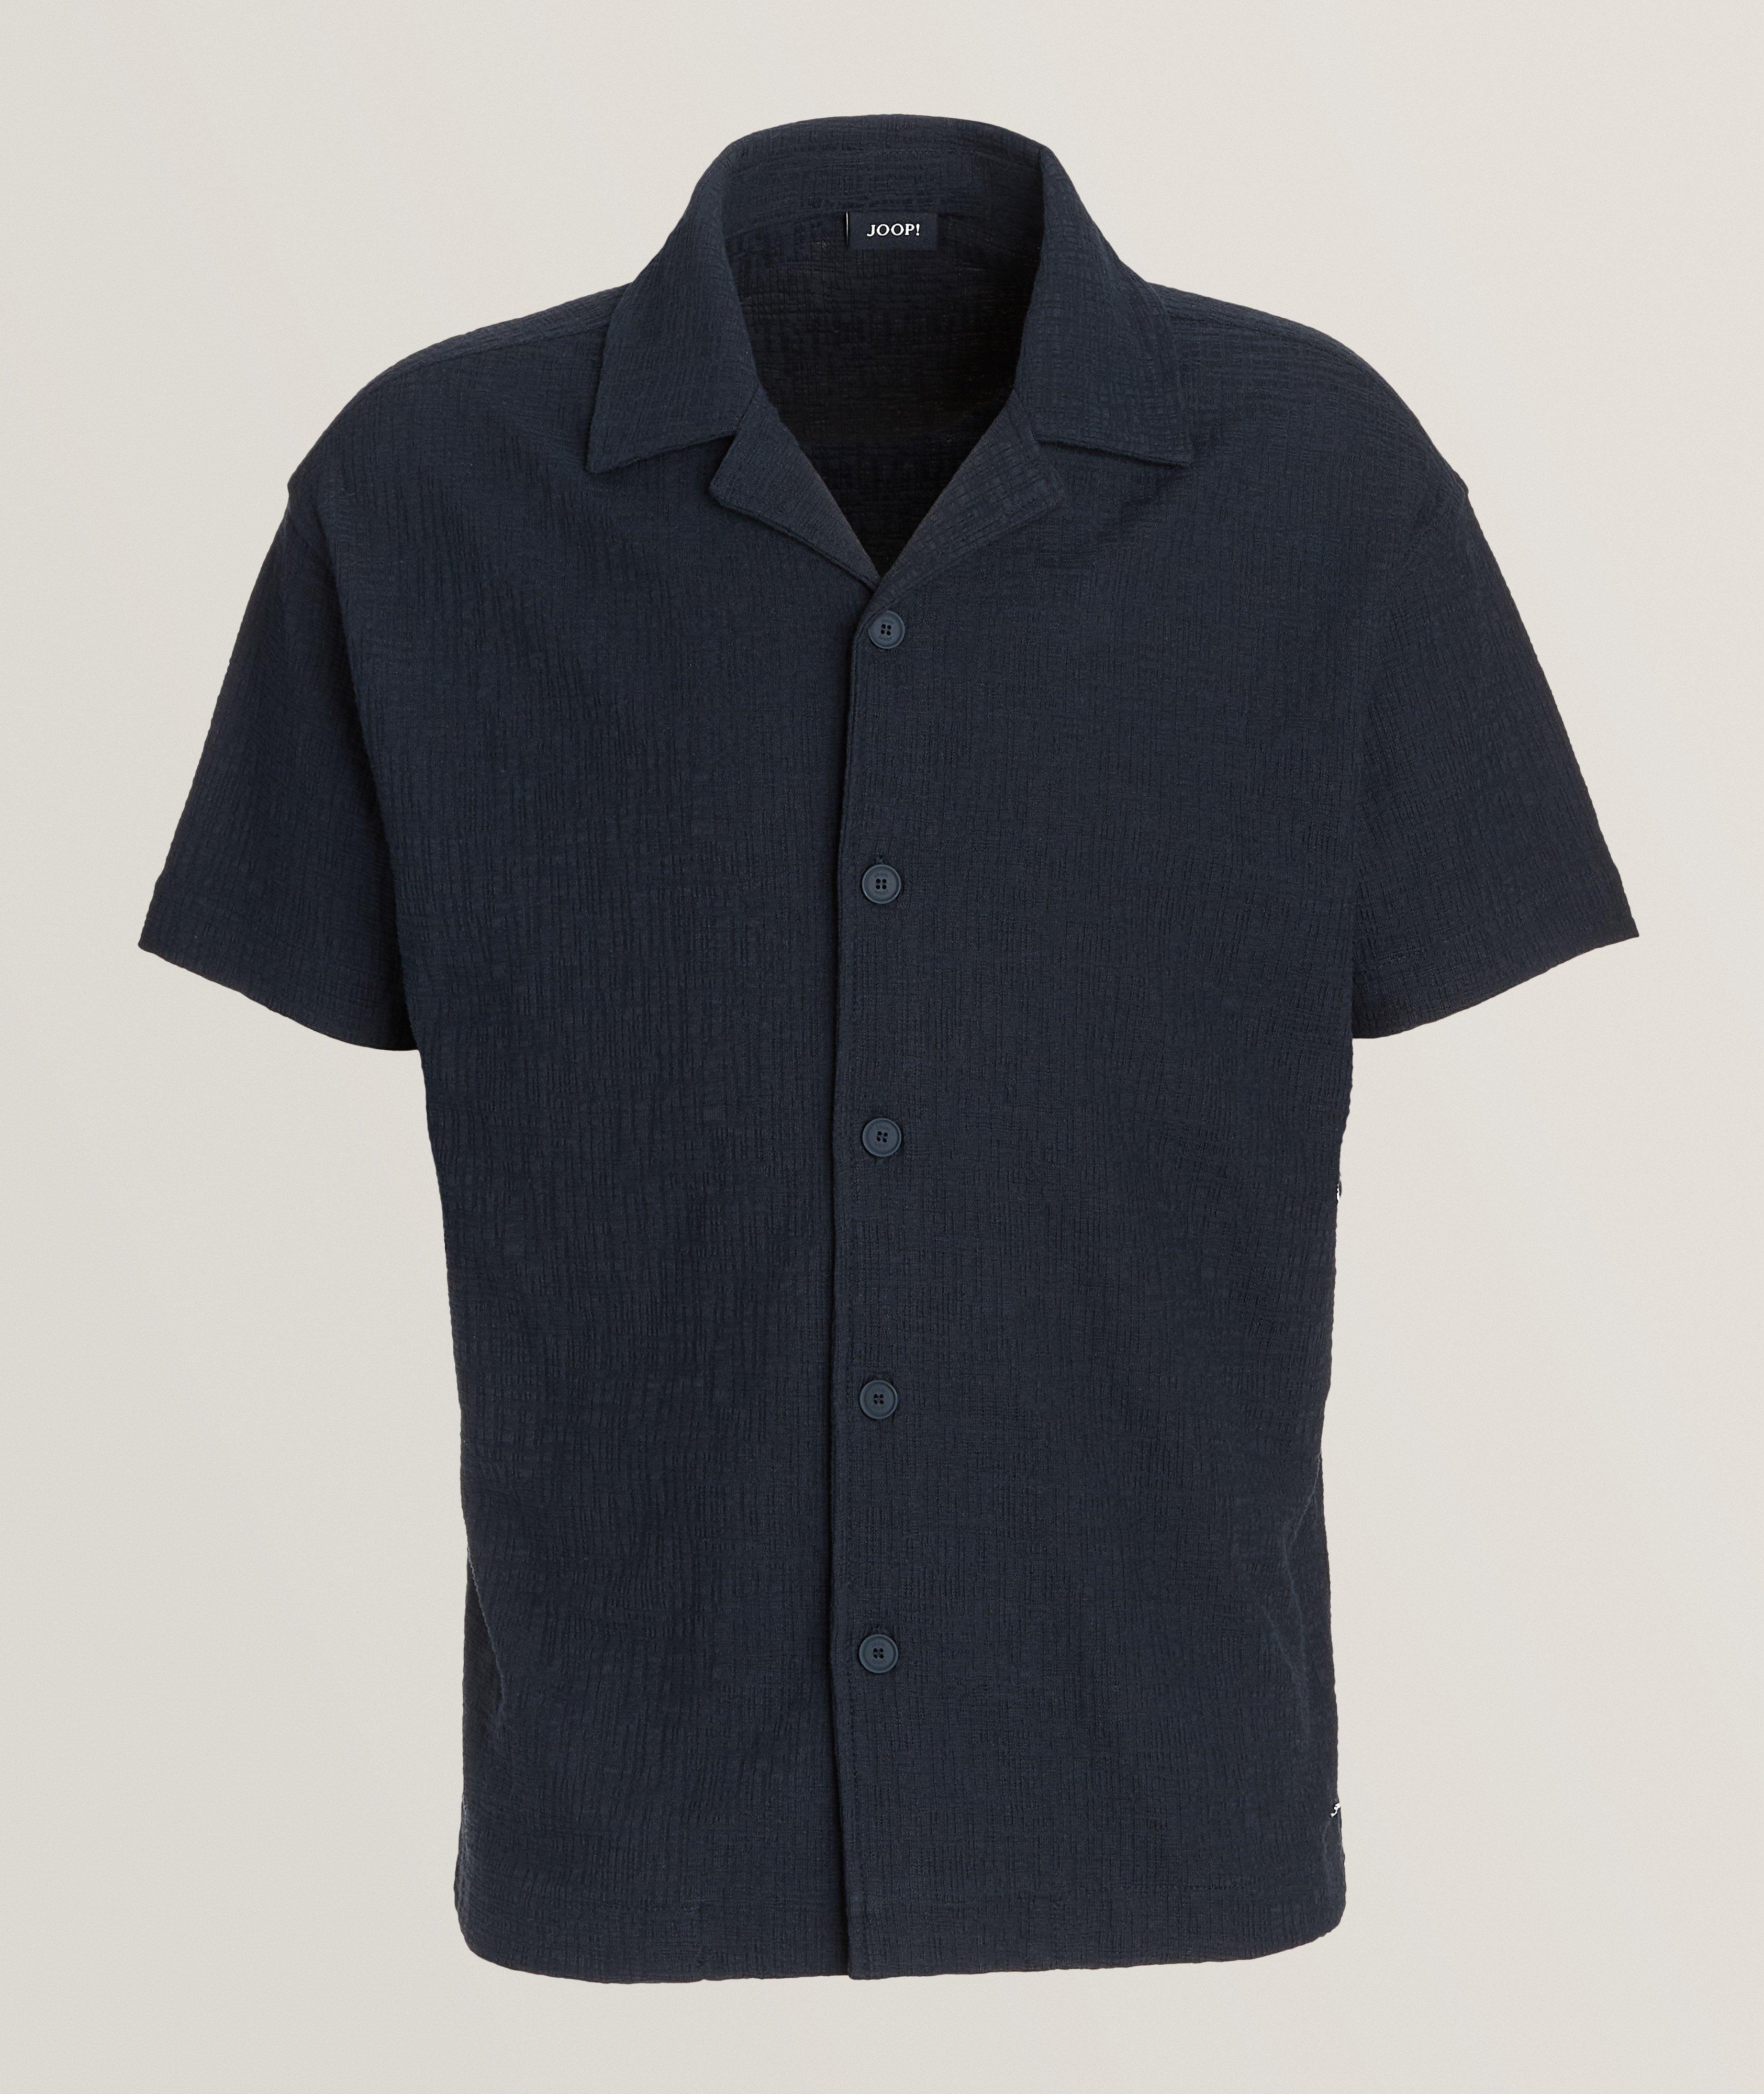 Tate Textured Cotton-Blend Camp Shirt